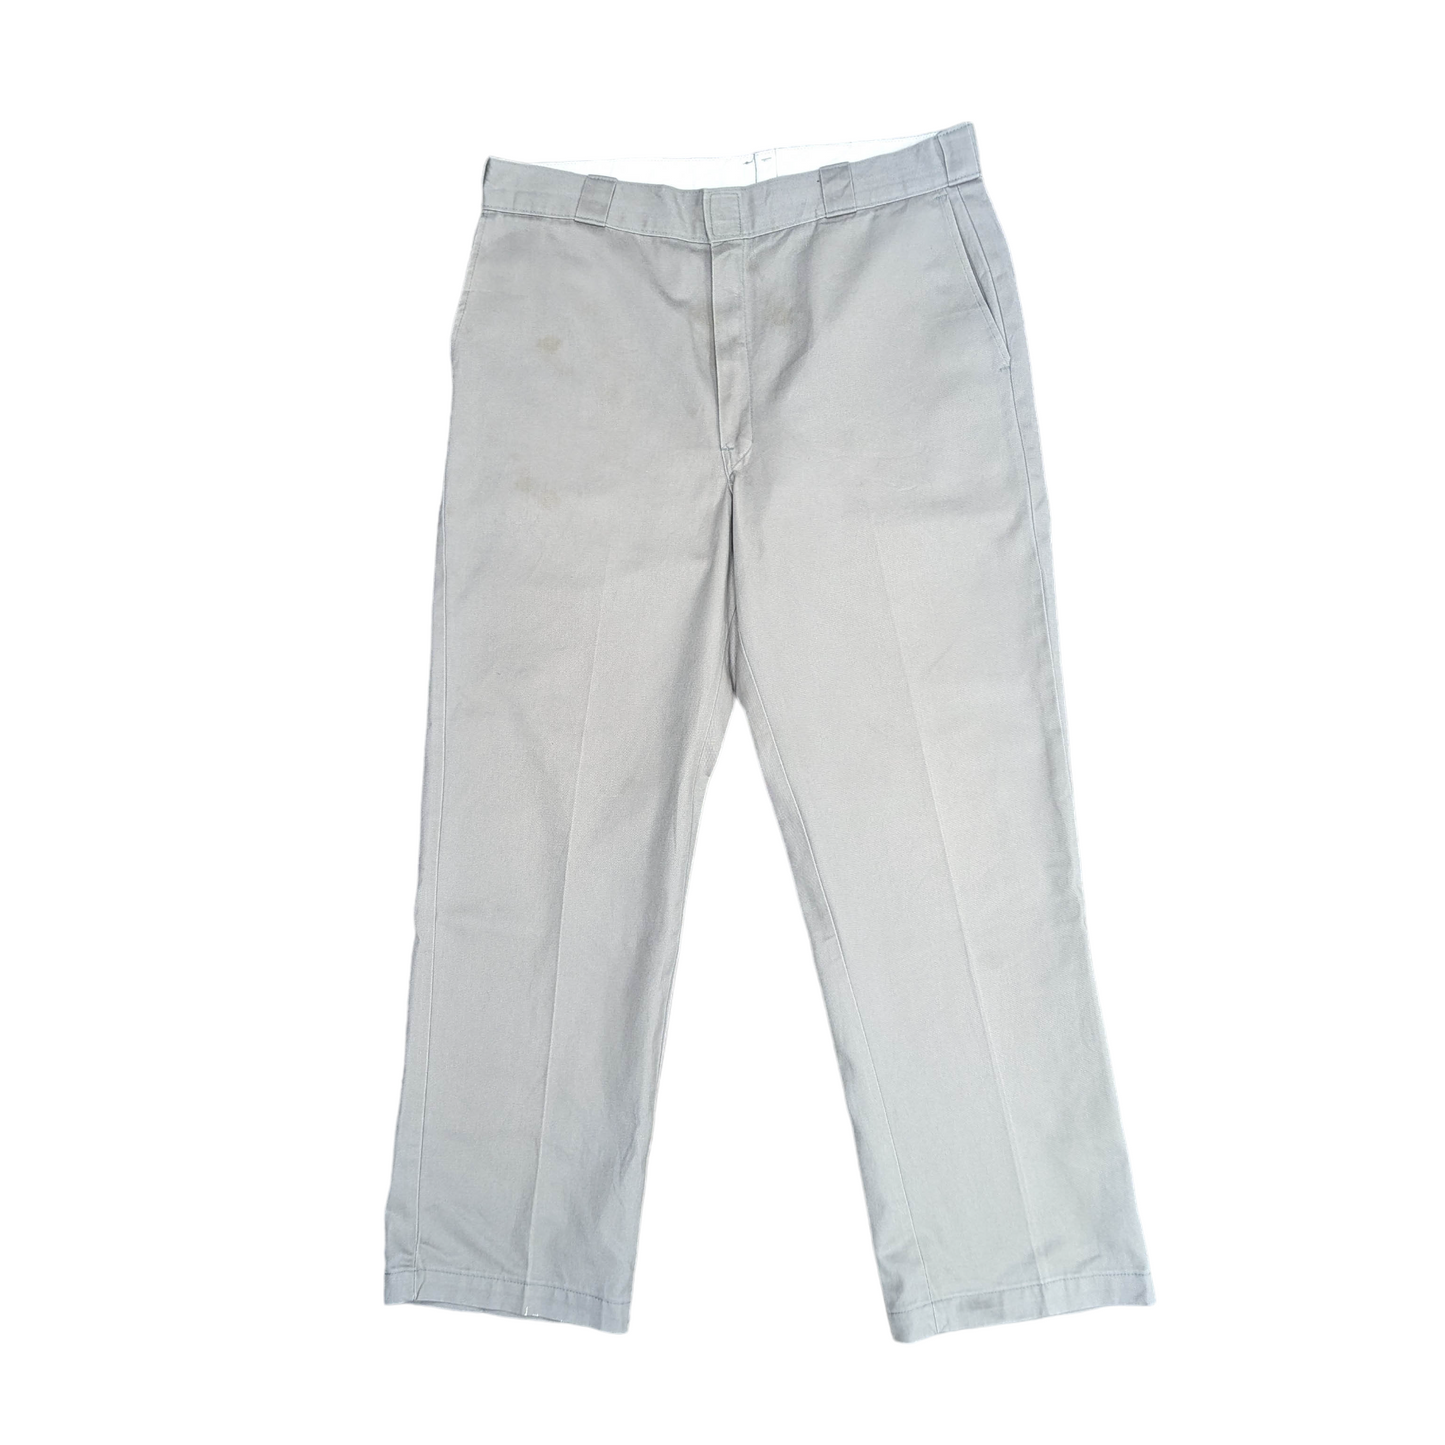 Dickies 874 Original Fit Trousers W37 L30